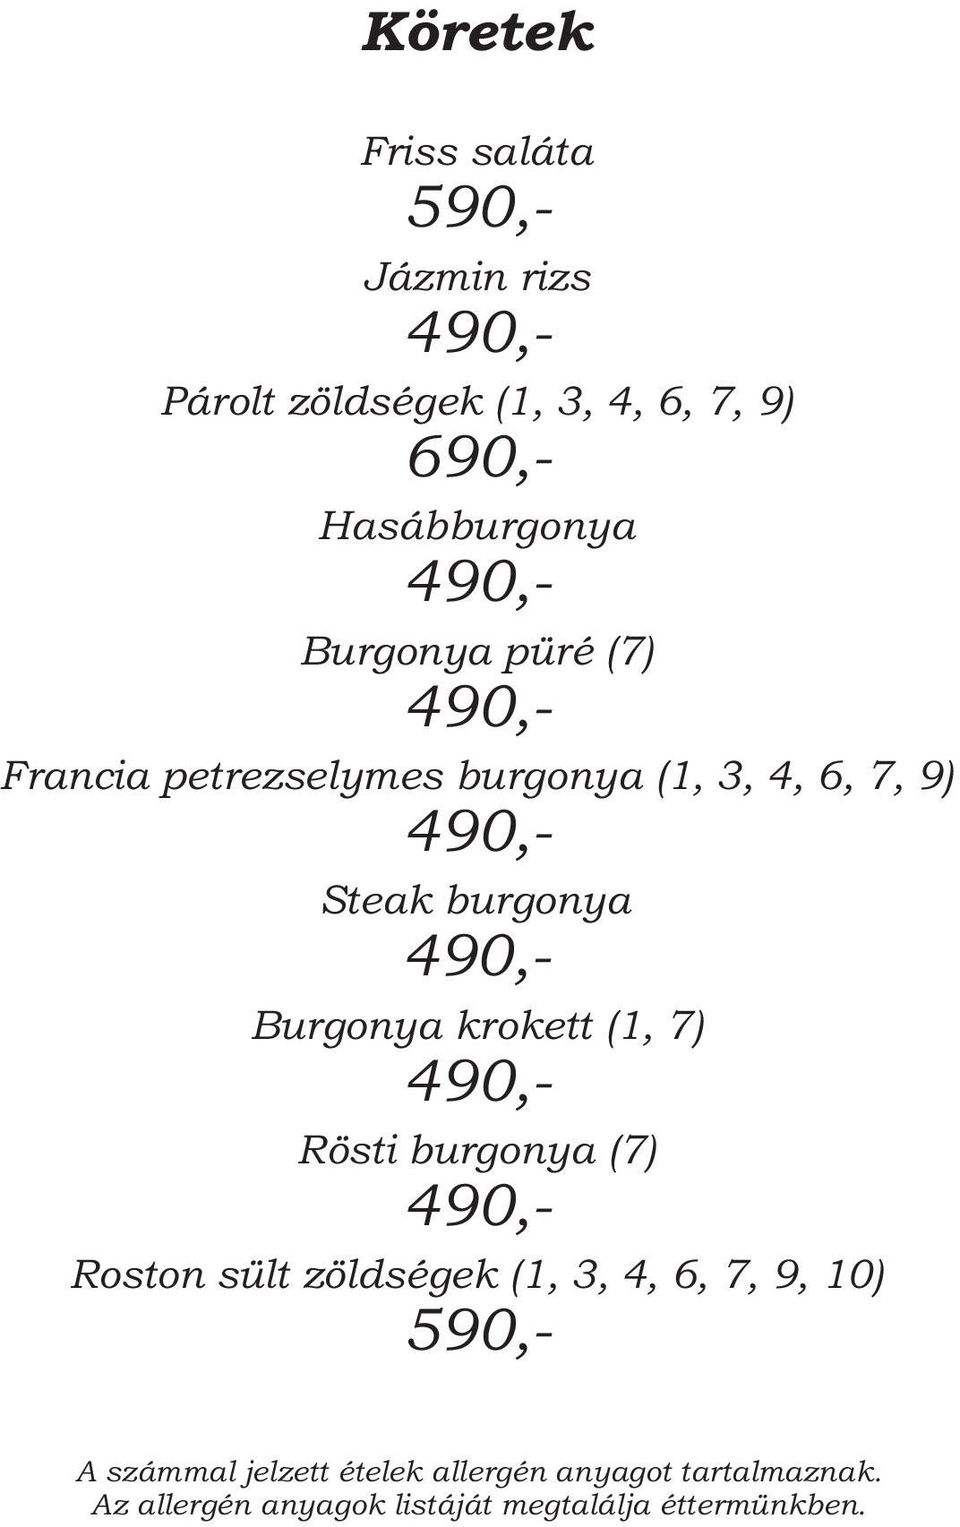 burgonya (1, 3, 4, 6, 7, 9) 490,- Steak burgonya 490,- Burgonya krokett (1, 7)